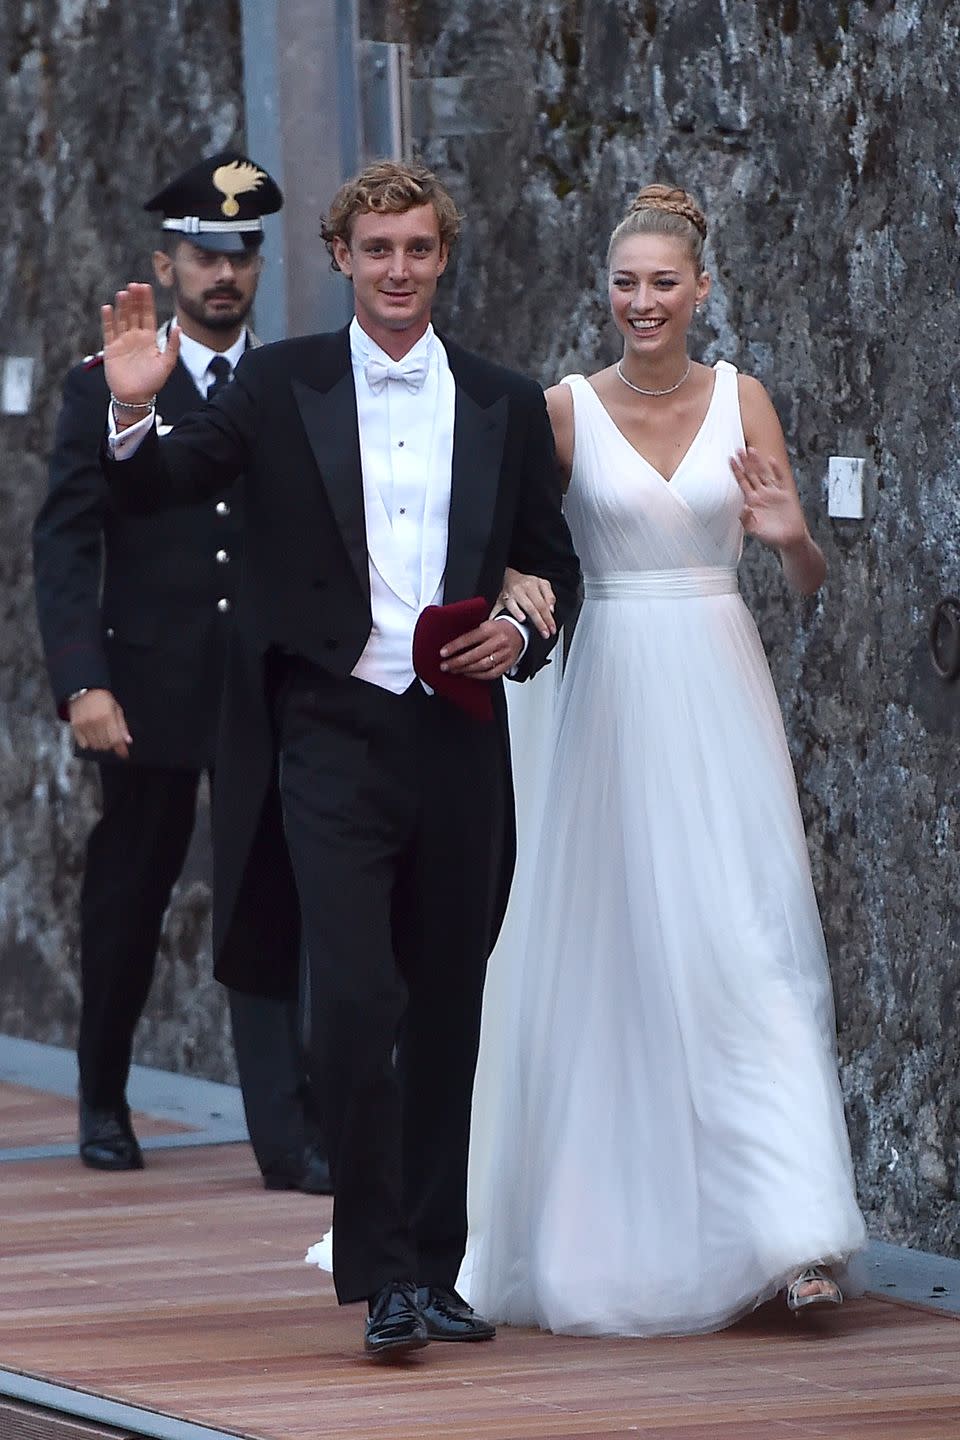 Pierre Casiraghi of Monaco and Beatrice Borromeo